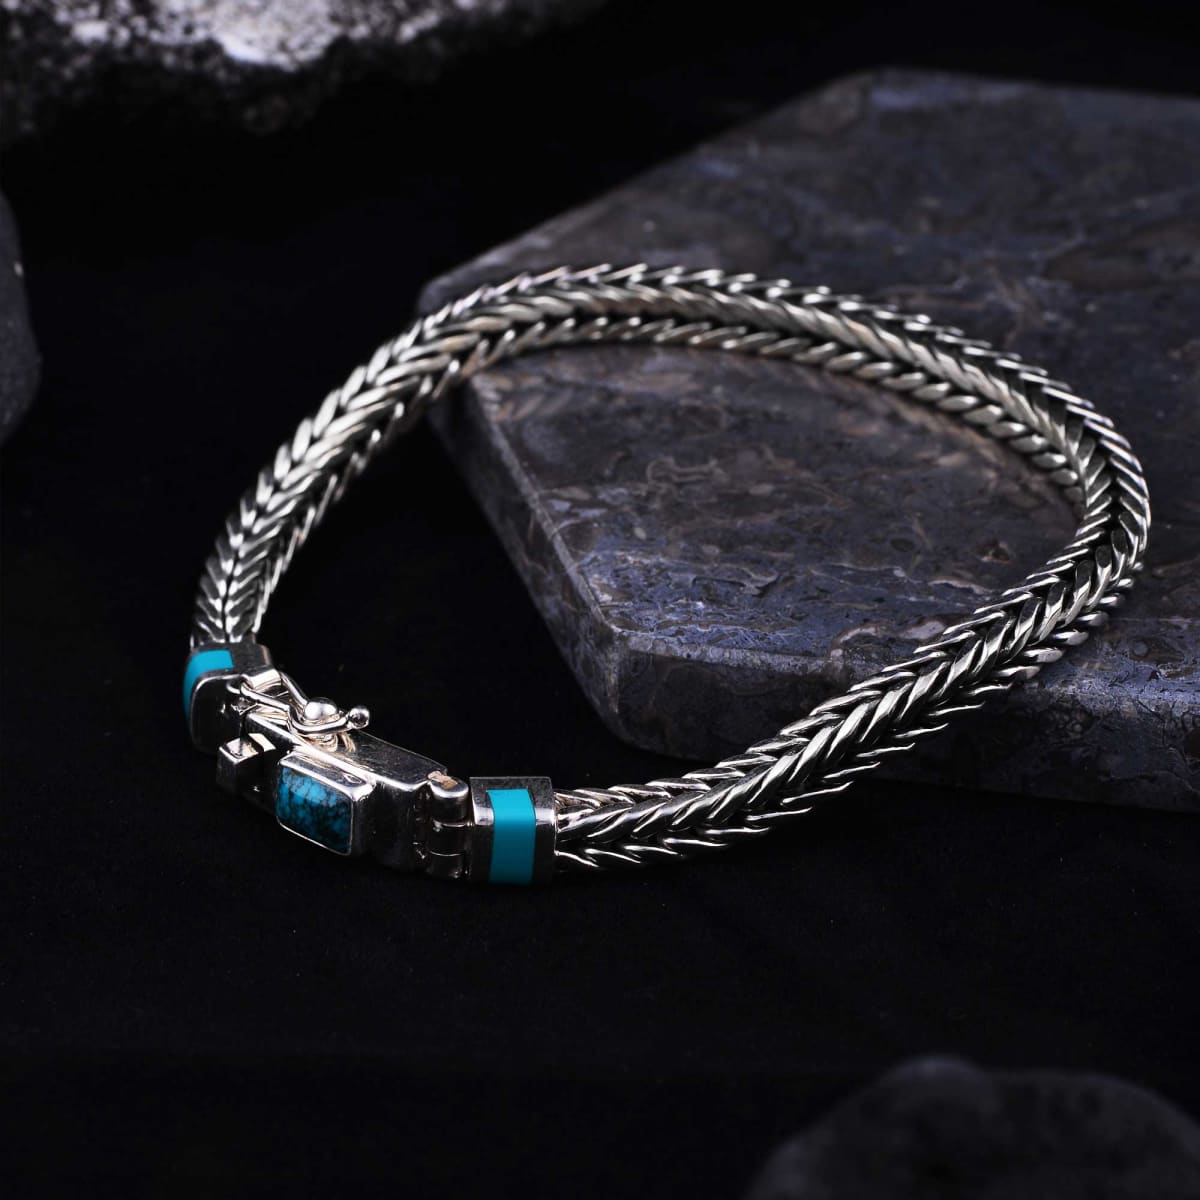 Men's Handmade Silver Chain Bracelet